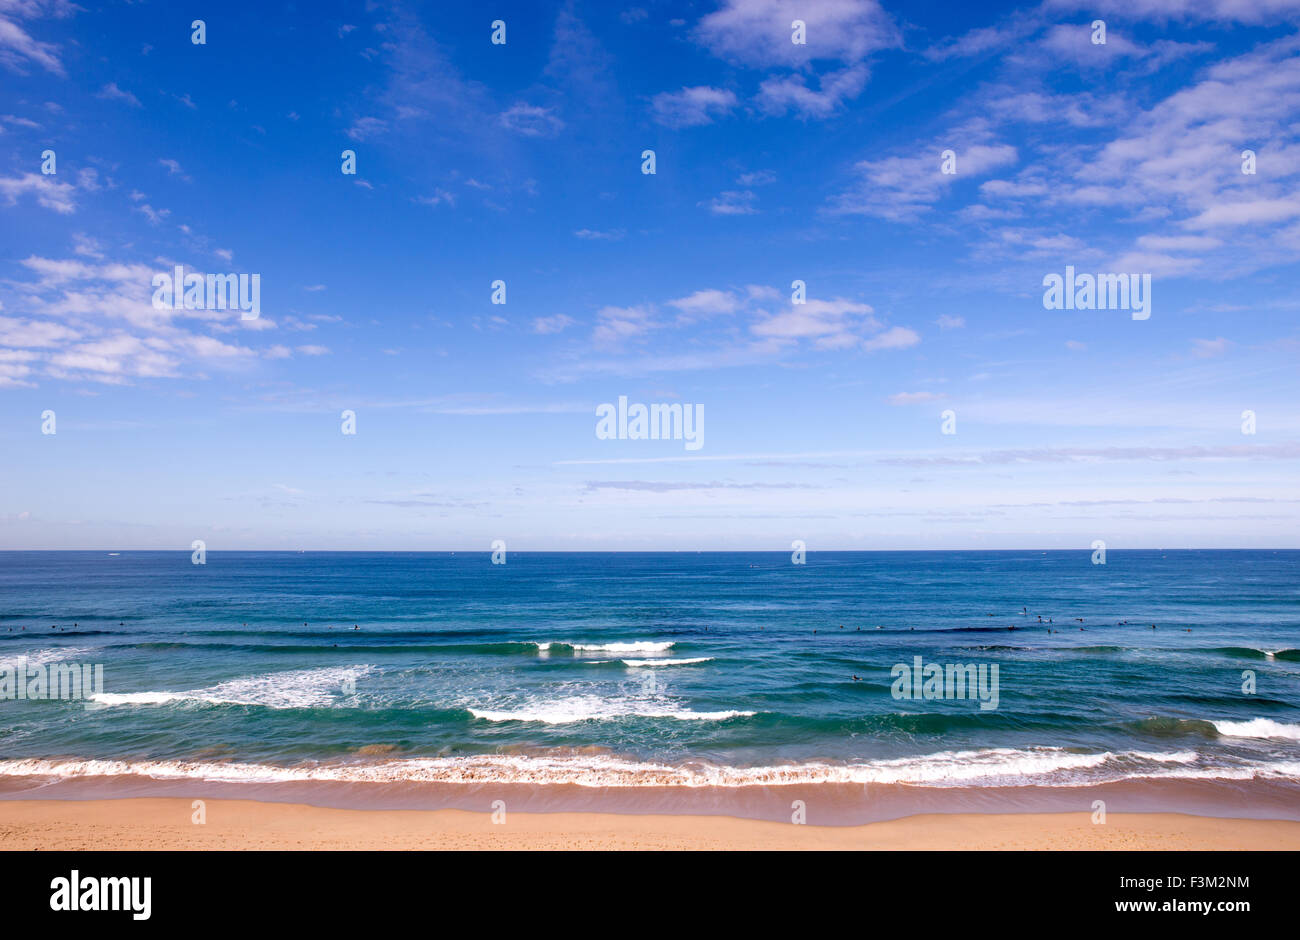 La Playa de Cronulla en Sydney, Australia, con nadadores, las nubes y las olas del océano azul Foto de stock